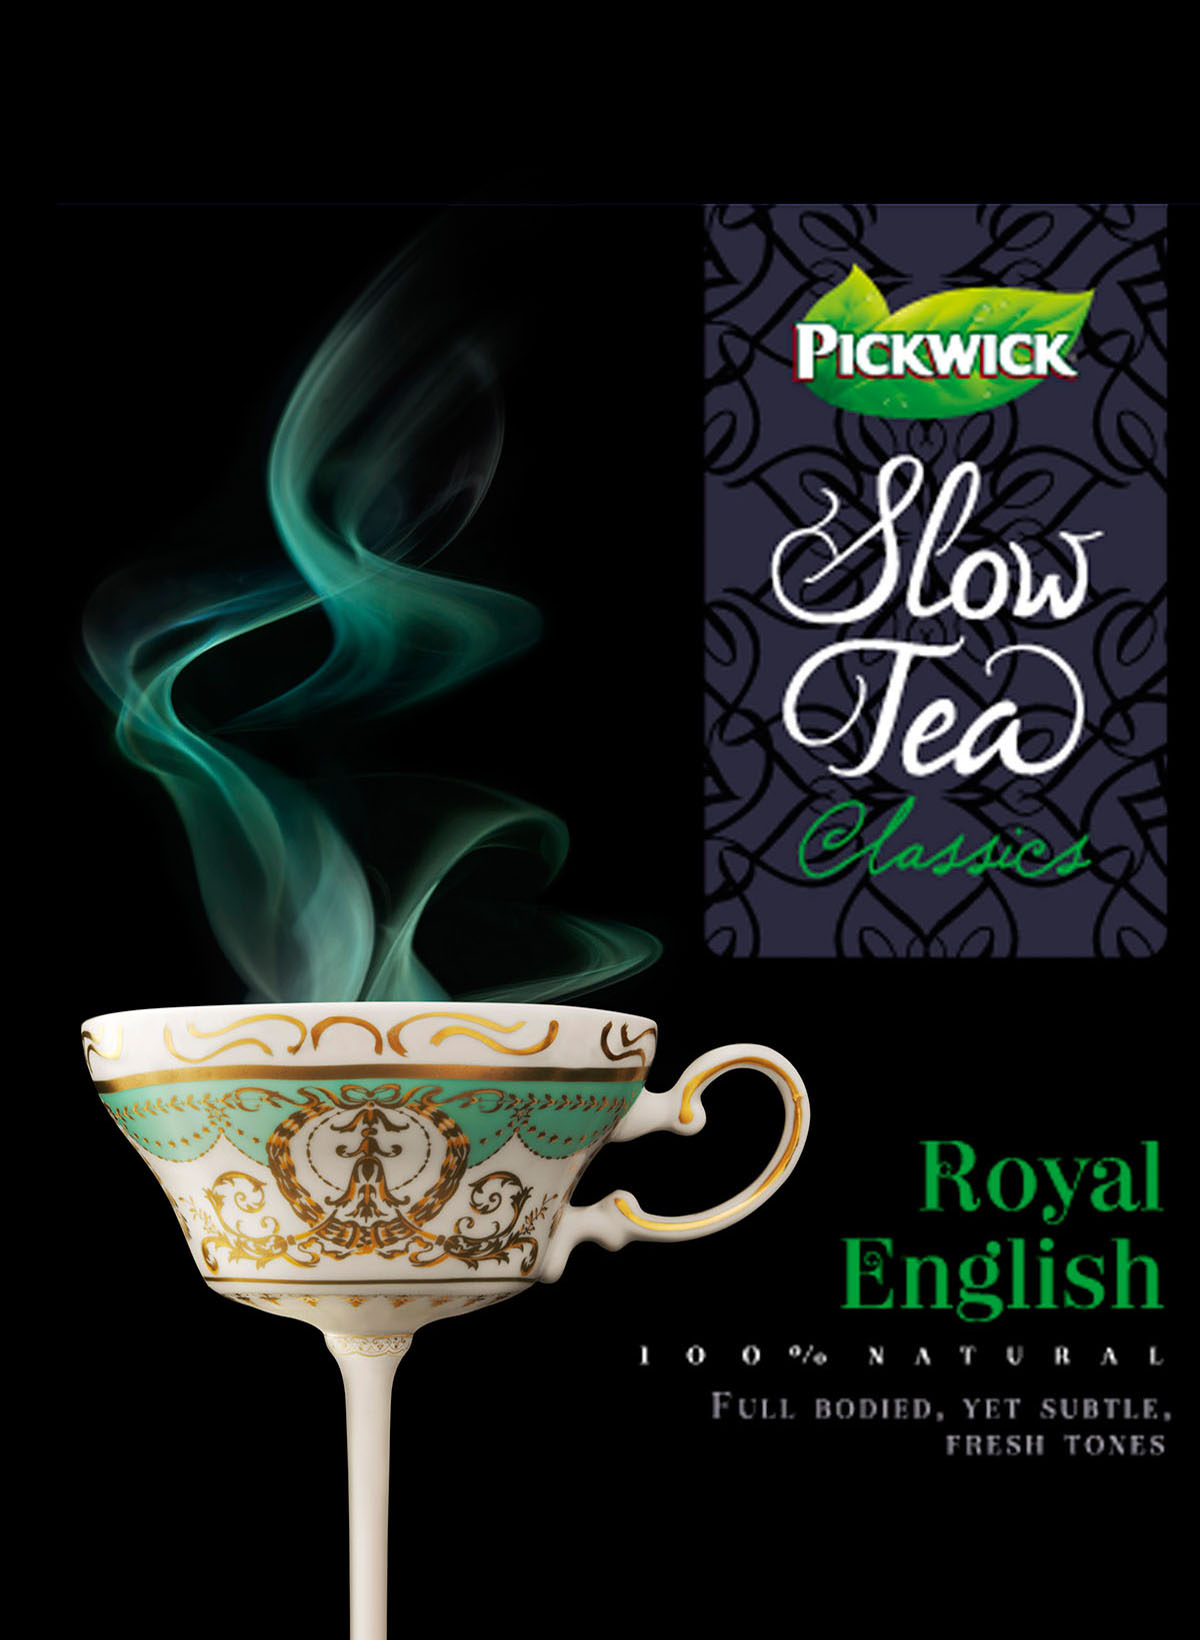 Packaging fotografie van Pickwick Slow Tea's Royal English gemaakt door Studio_m Fotografie Amsterdam